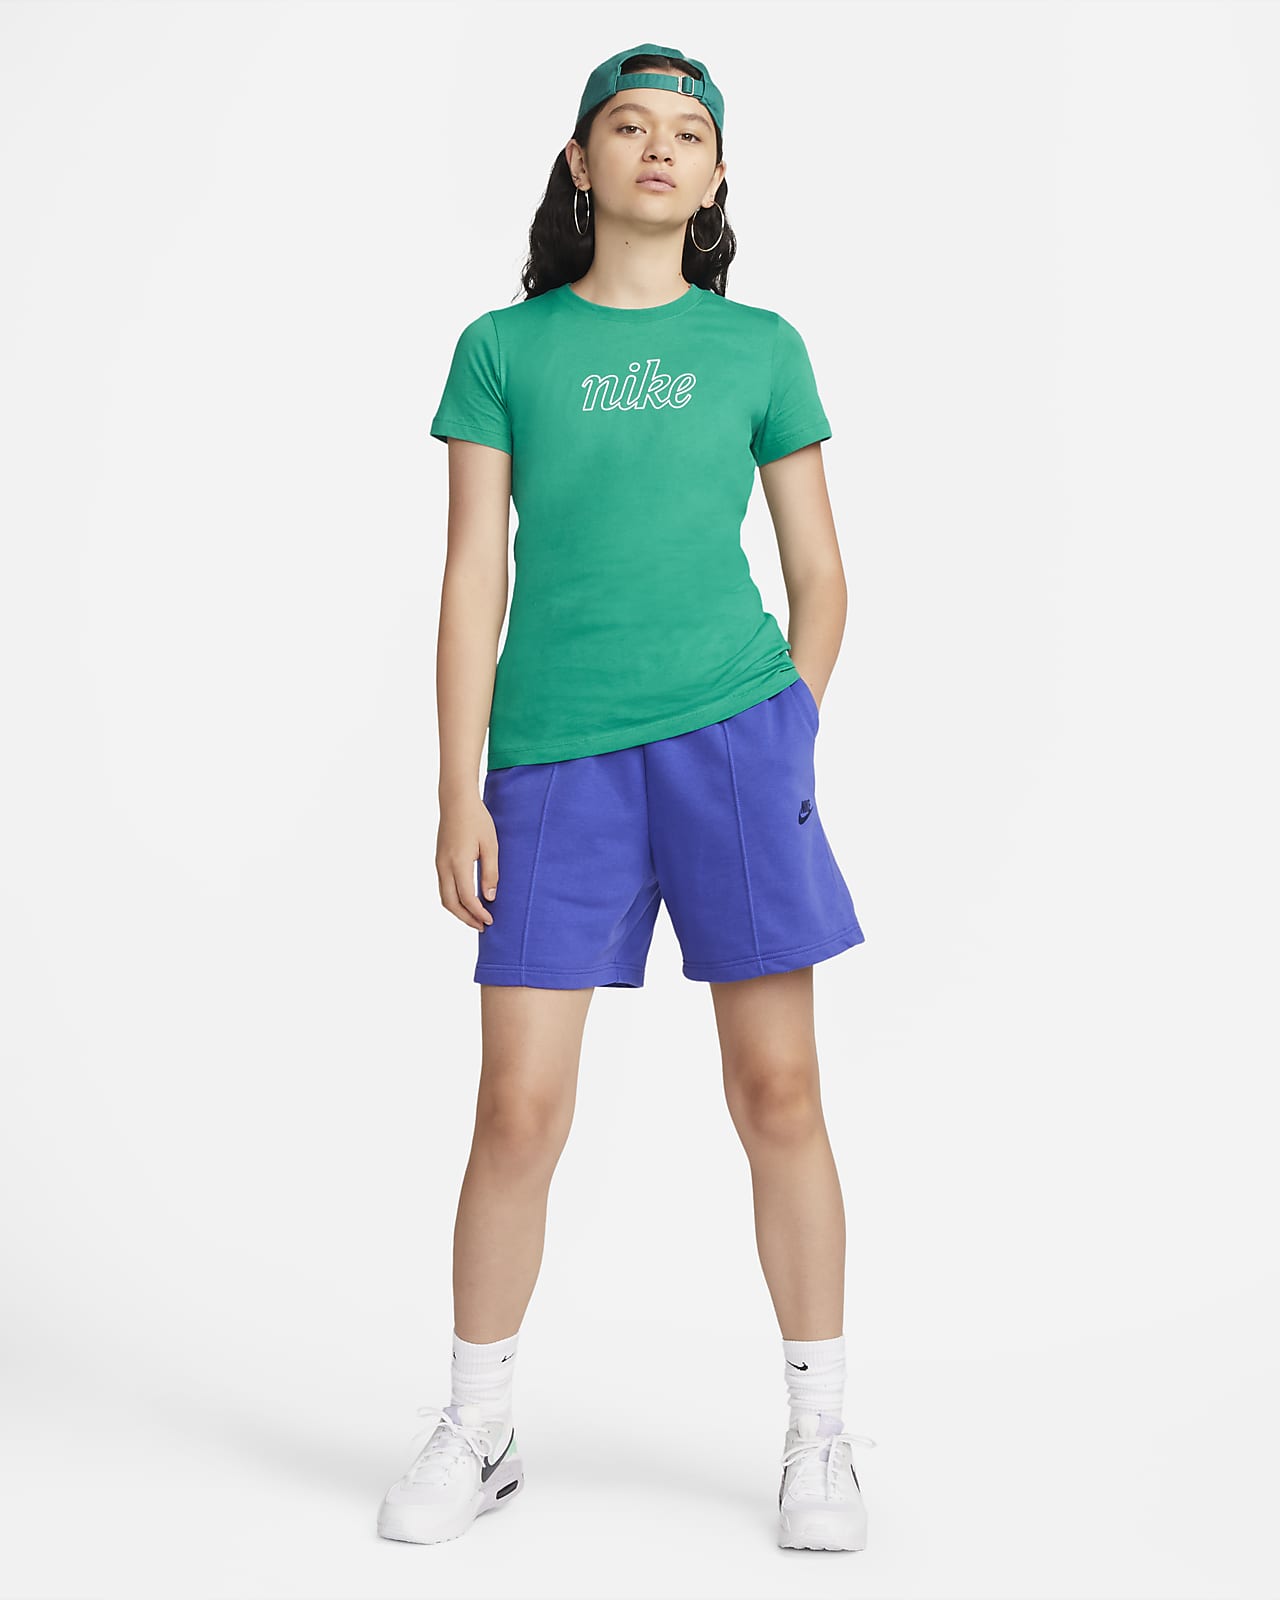 Camiseta Nike Icon Clash Feminina - Tam: GG - Shopping TudoAzul